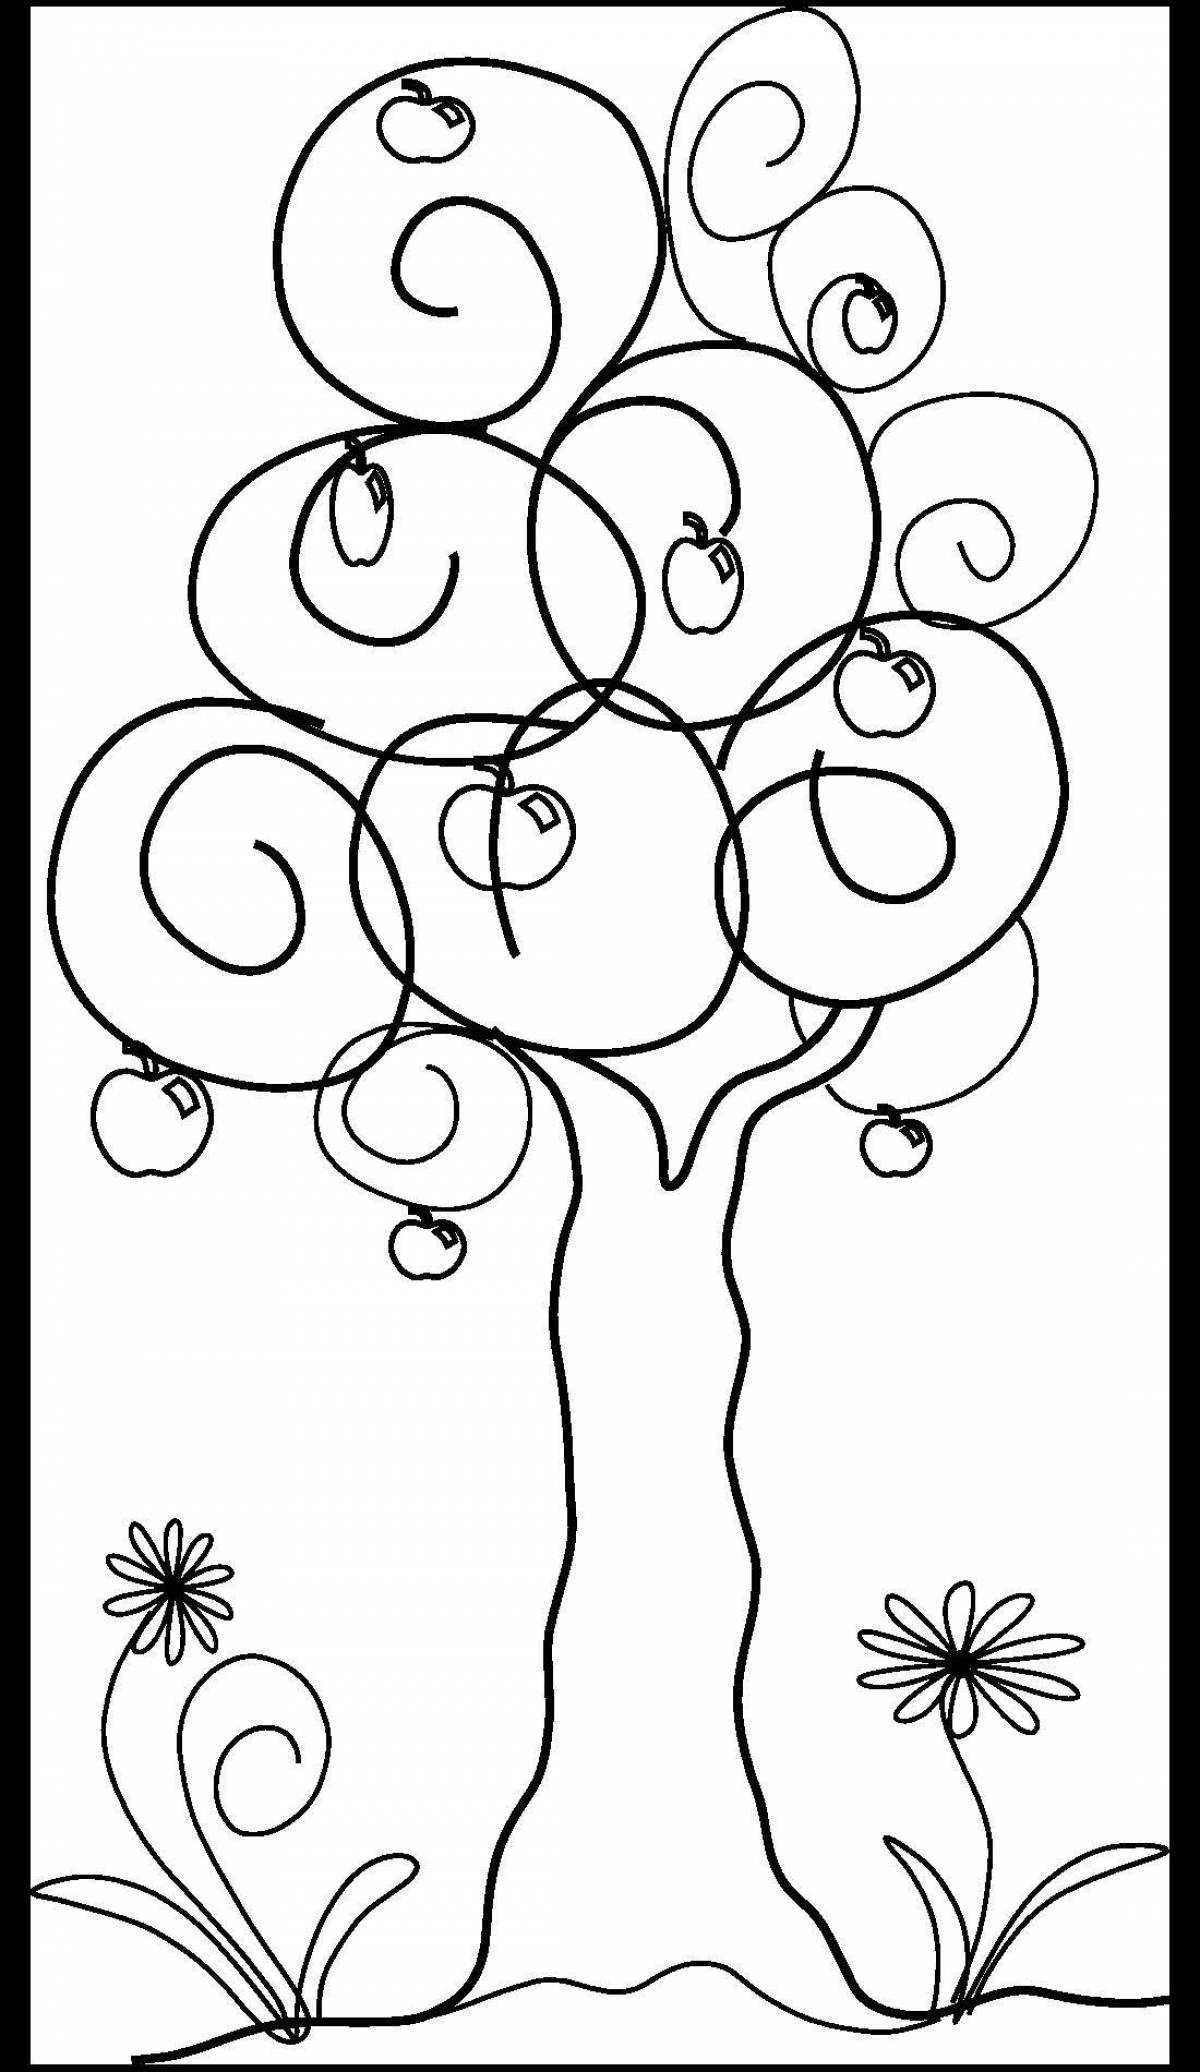 Generous magic tree coloring